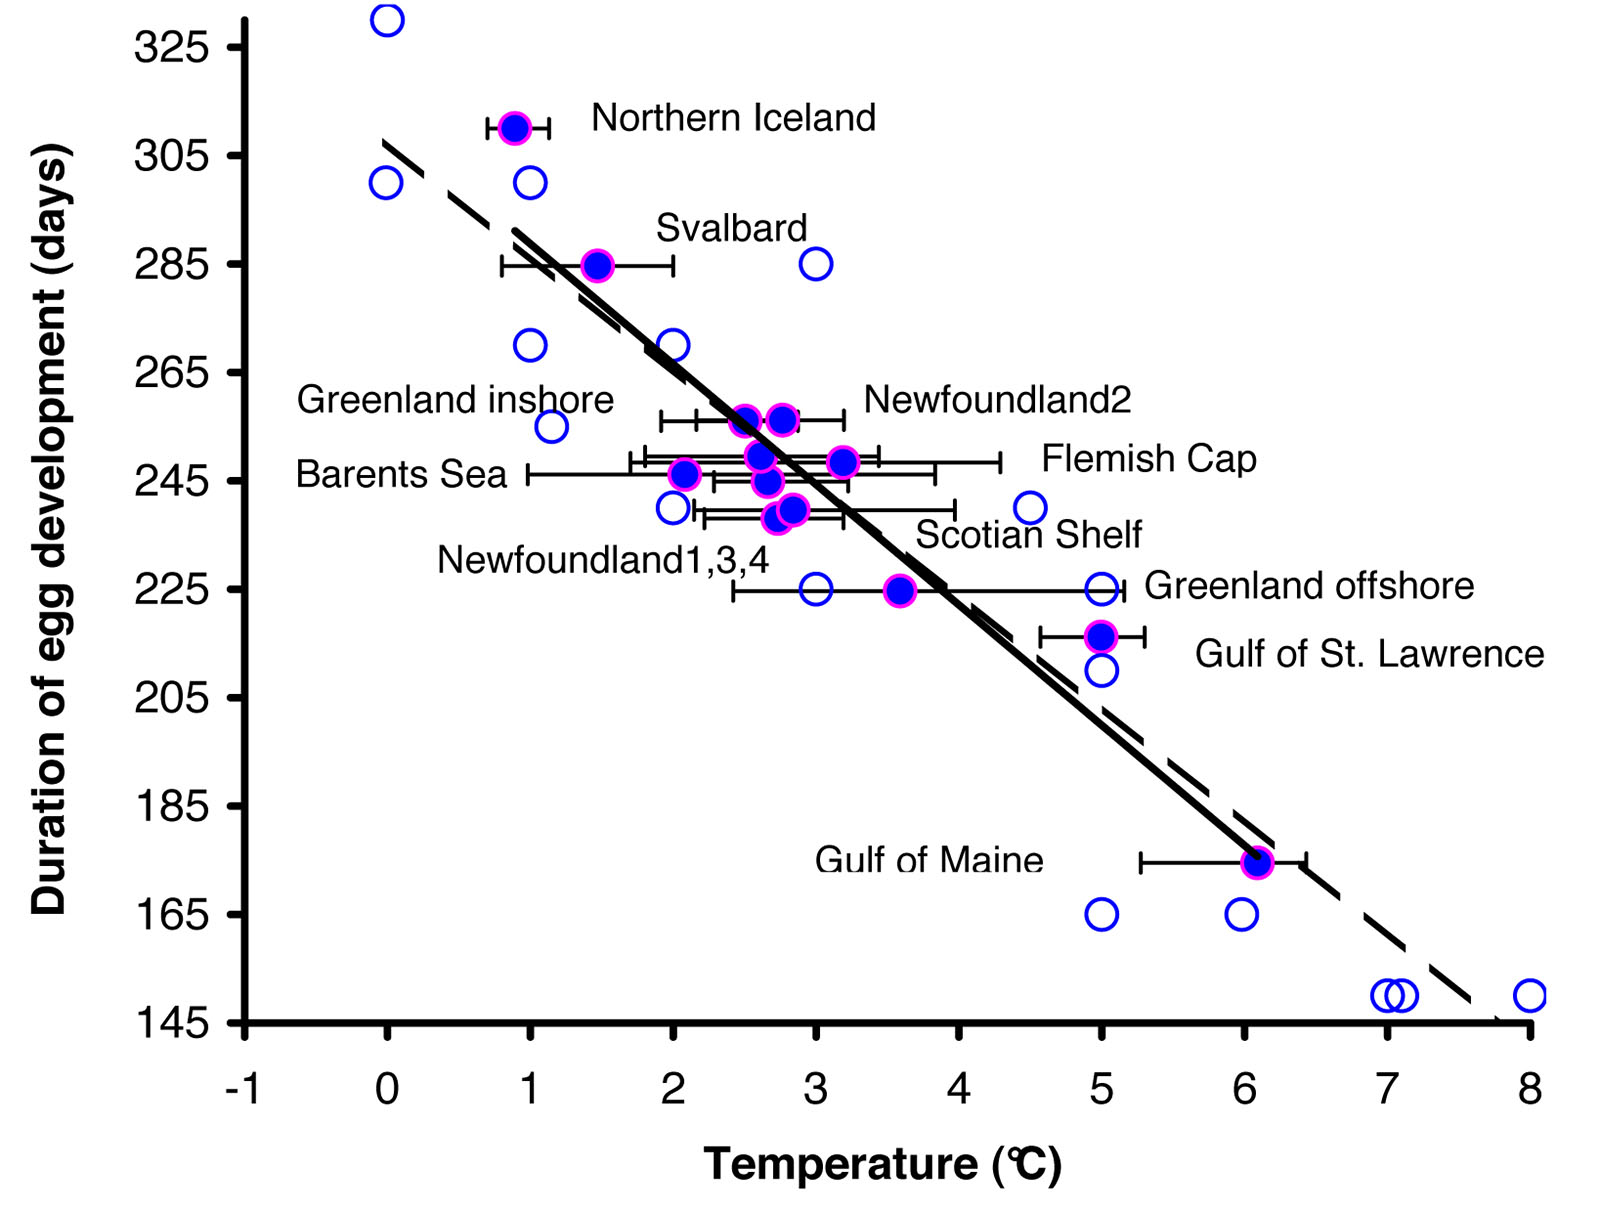 Figure 4 - Un graphique montrant la relation entre la température de l'eau et le nombre de jours qu'il faut pour les oeufs de crevettes à se développer.